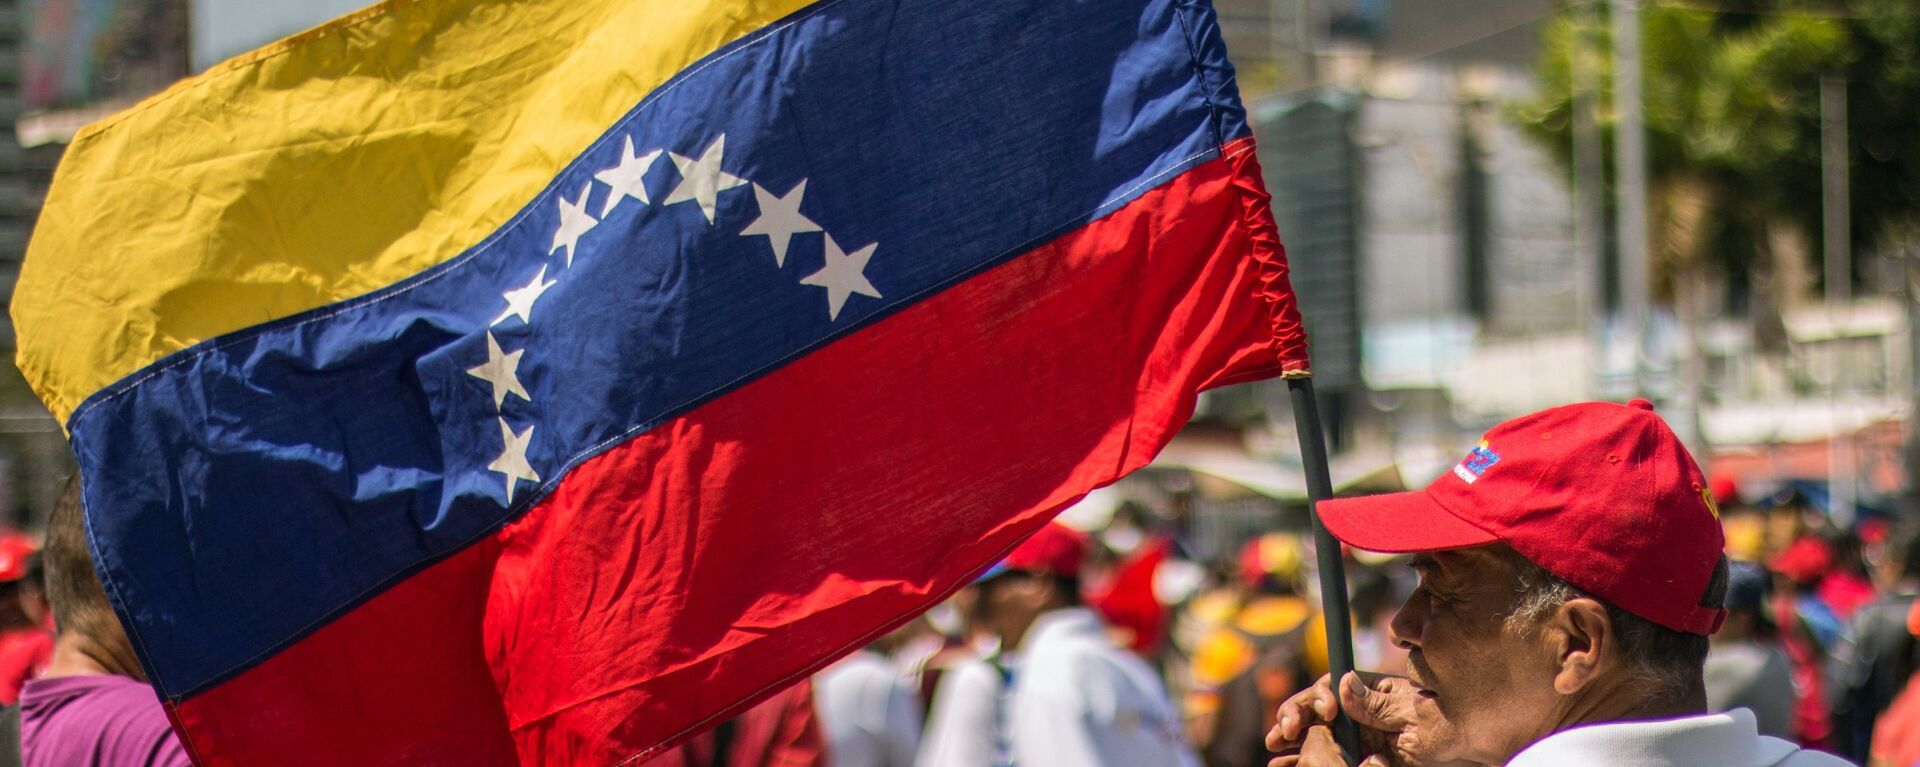 Un hombre con la bandera de Venezuela - Sputnik Mundo, 1920, 13.08.2021